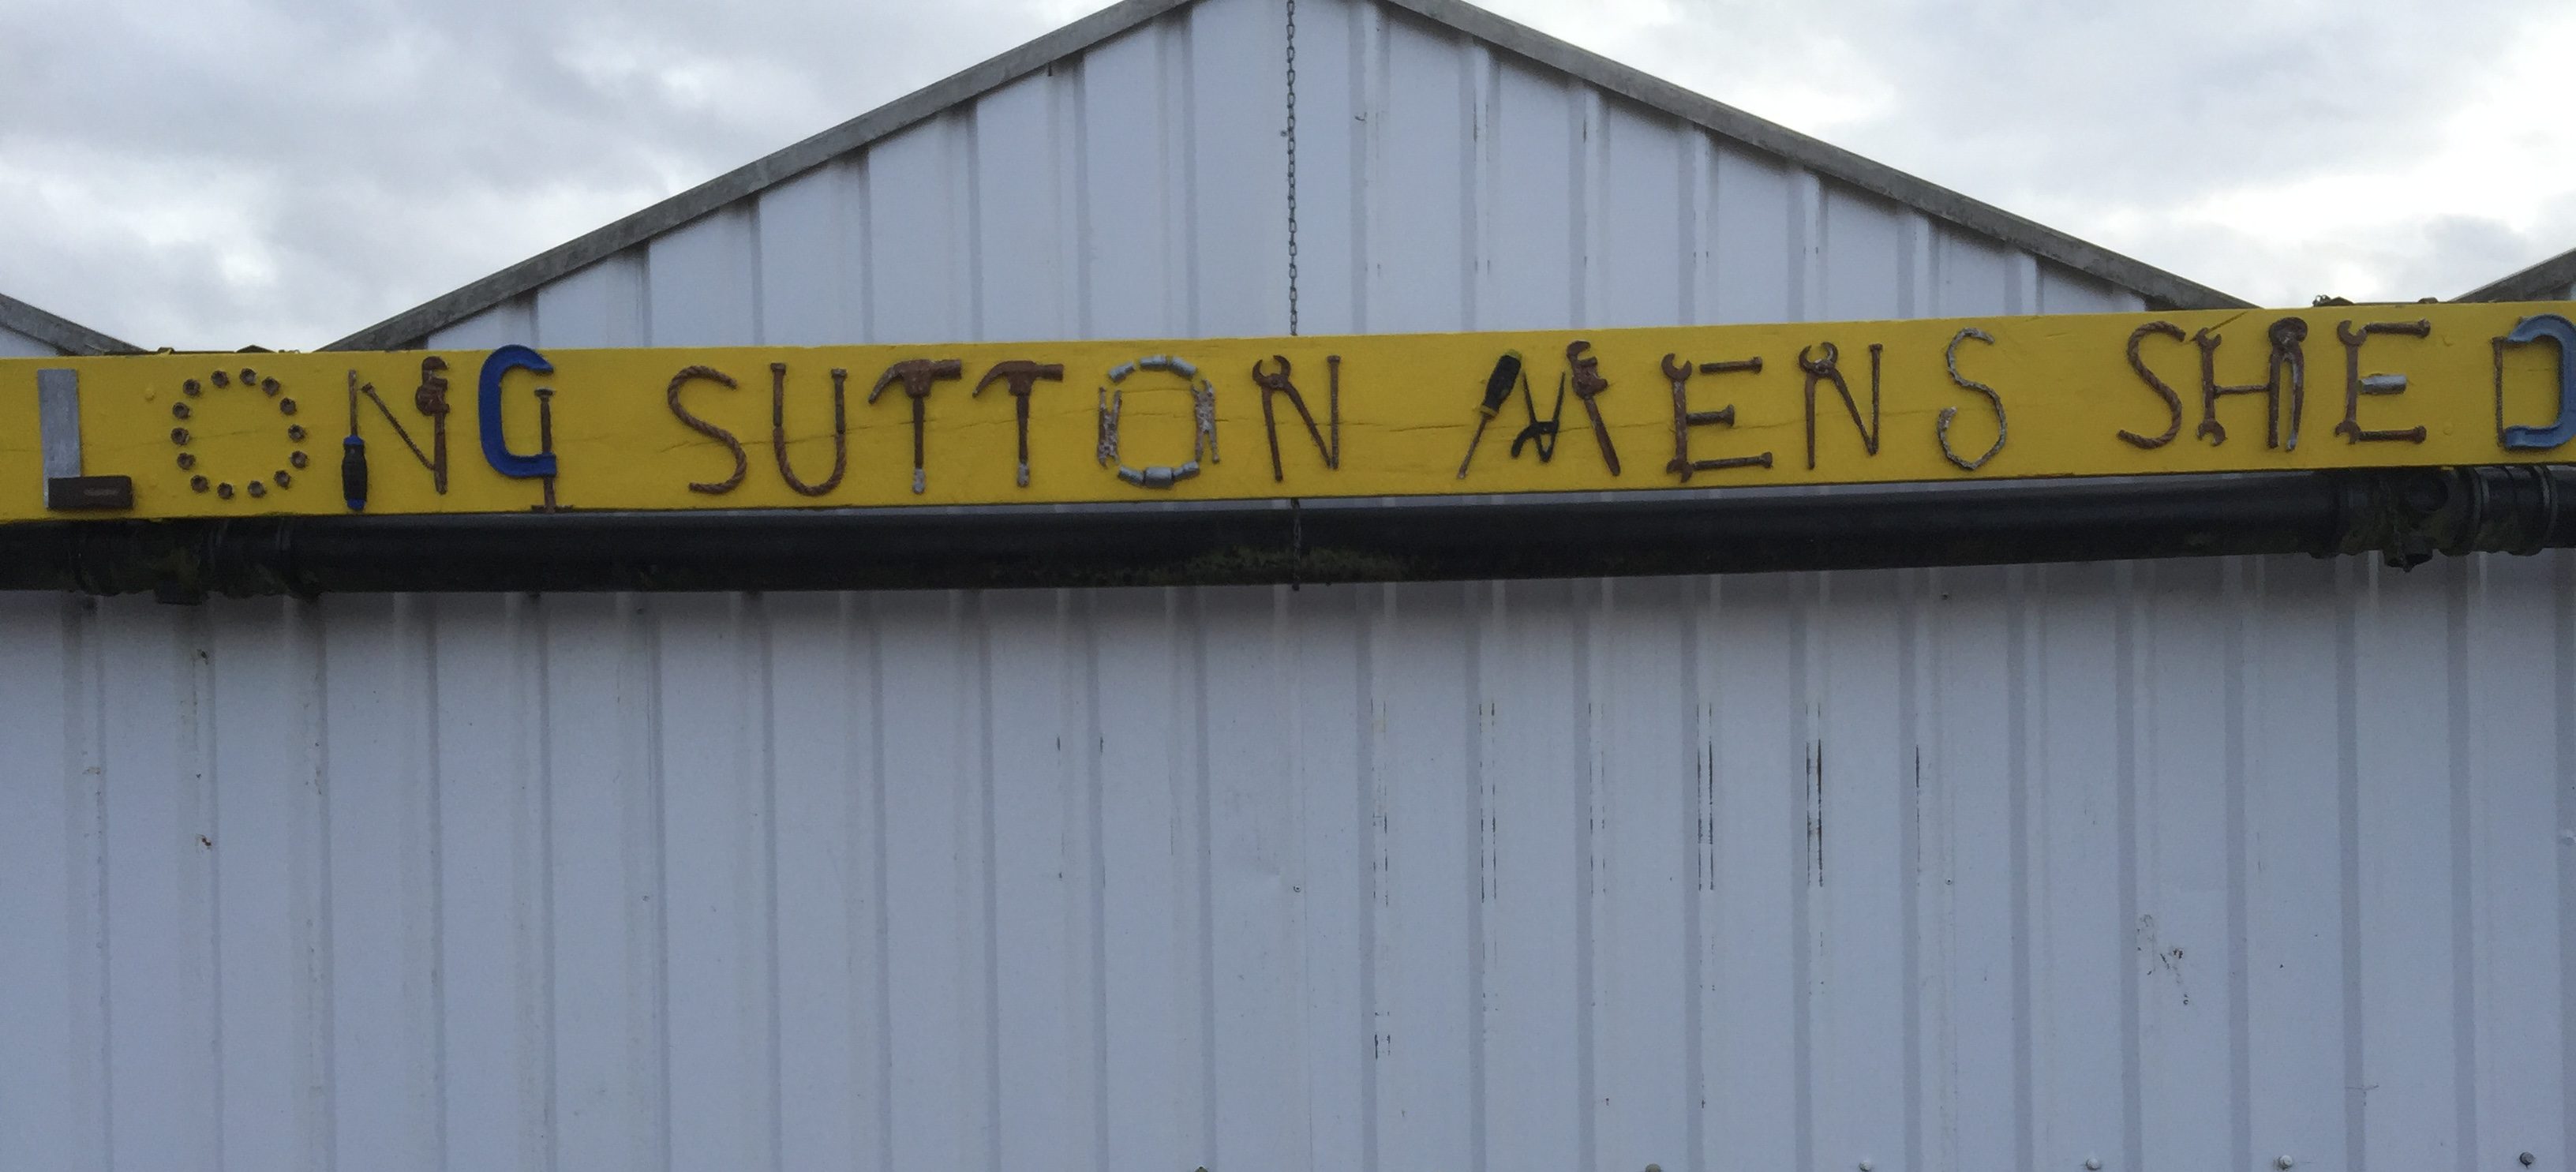 Long Sutton Men's Shed